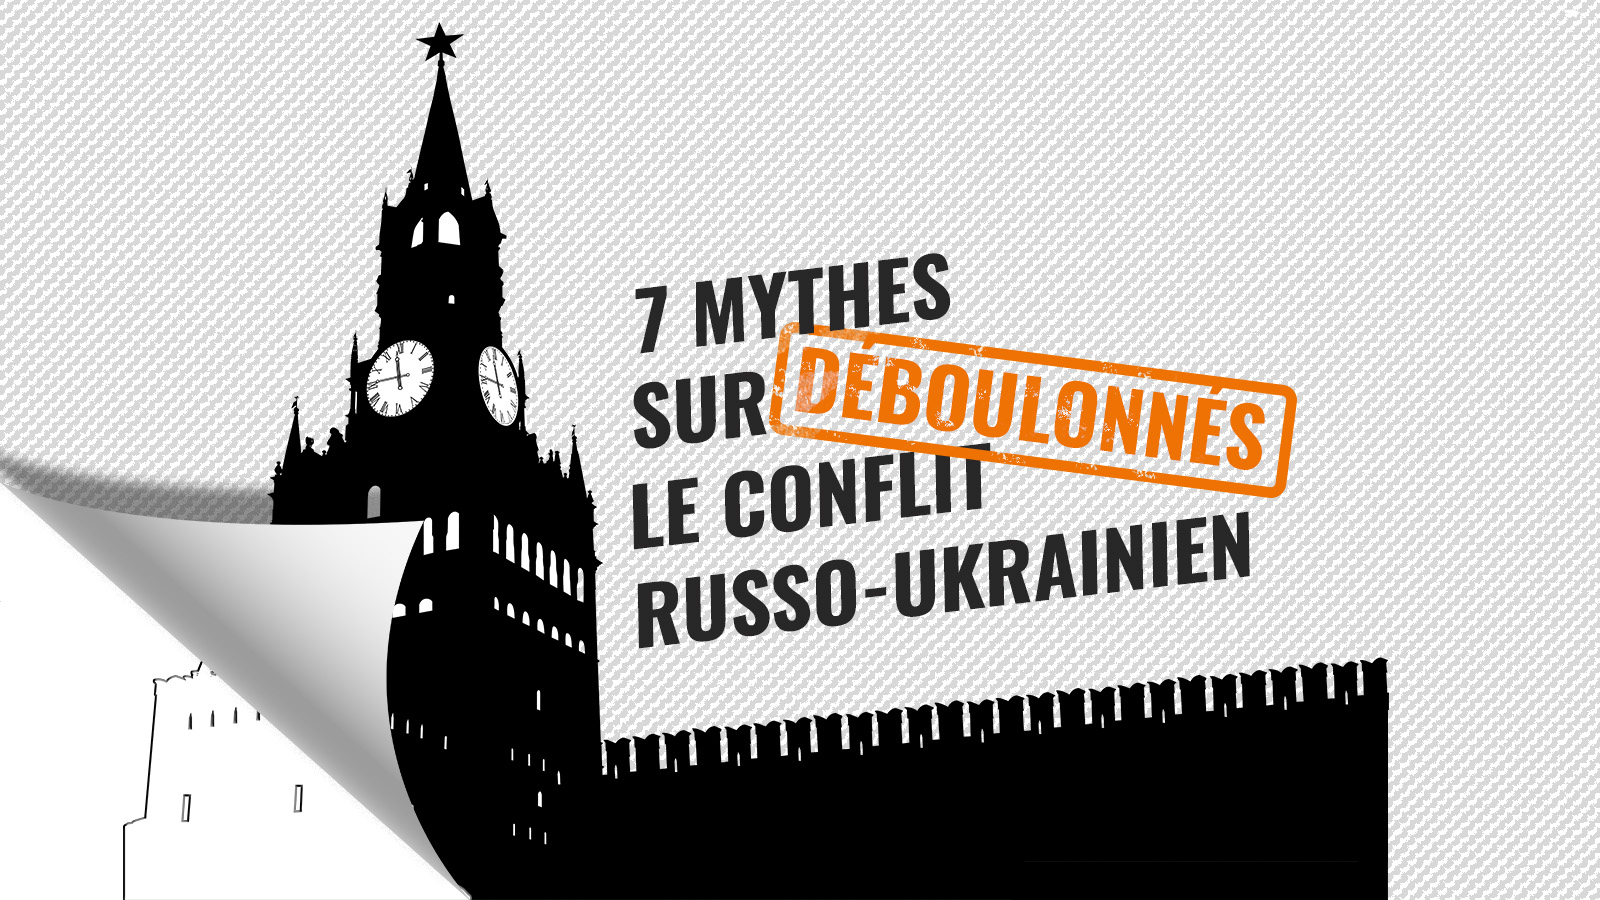 7 MYTHES SUR LE CONFLIT RUSSO-UKRAINIEN DÉBOULONNÉS